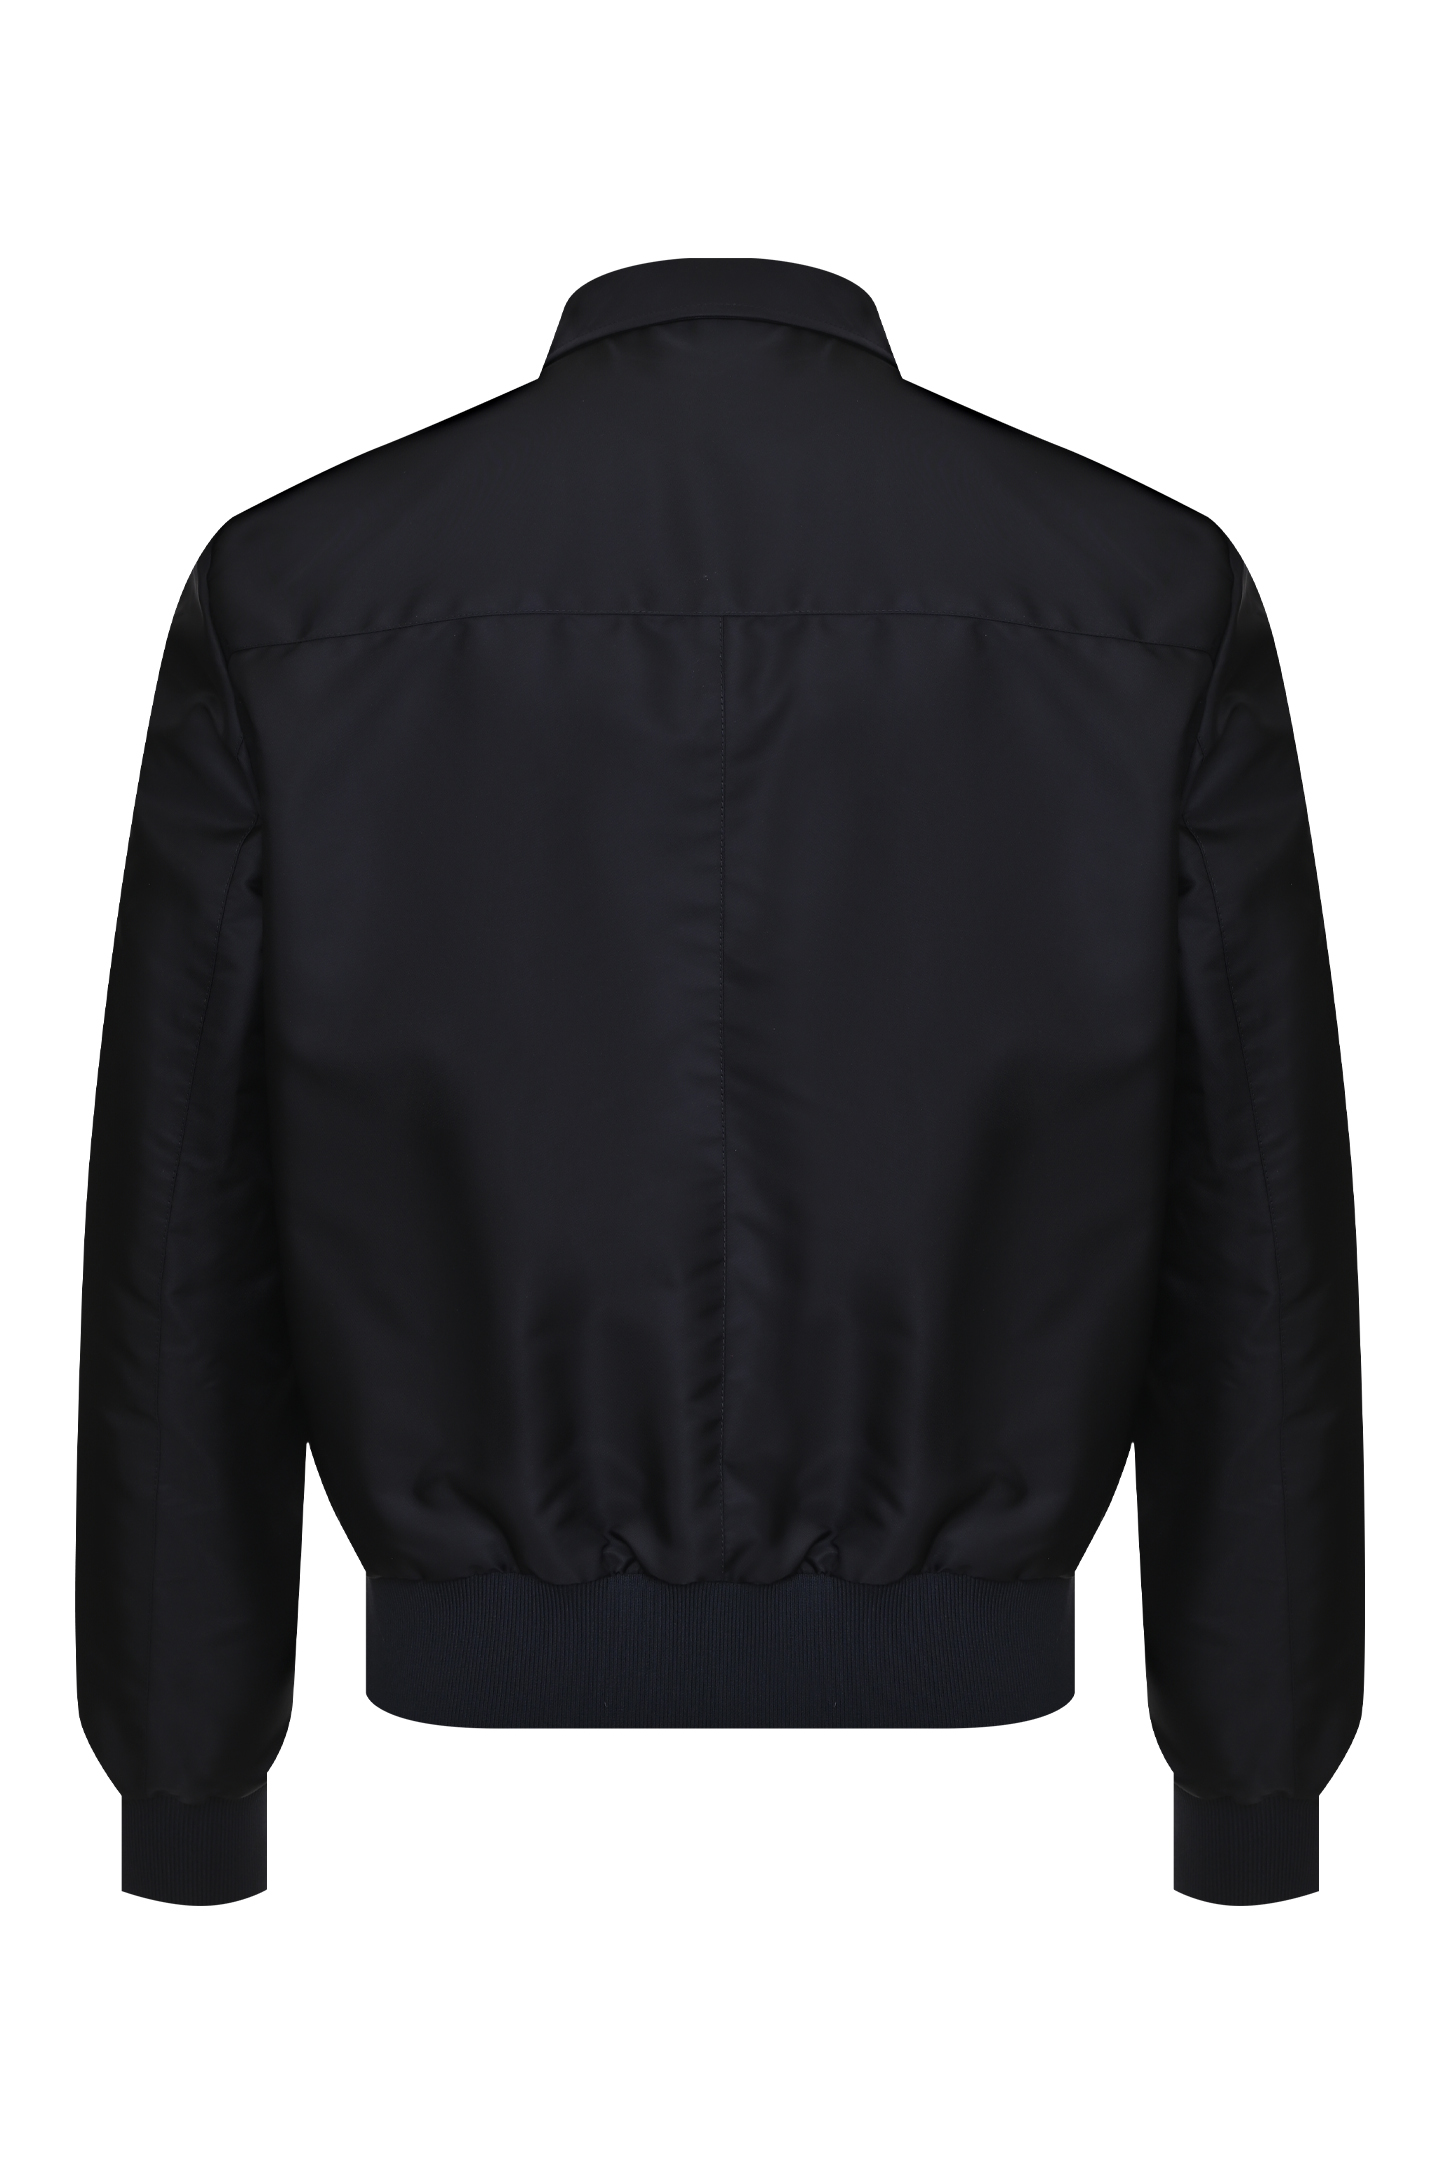 Куртка PRADA UPW284, цвет: Черный, Мужской